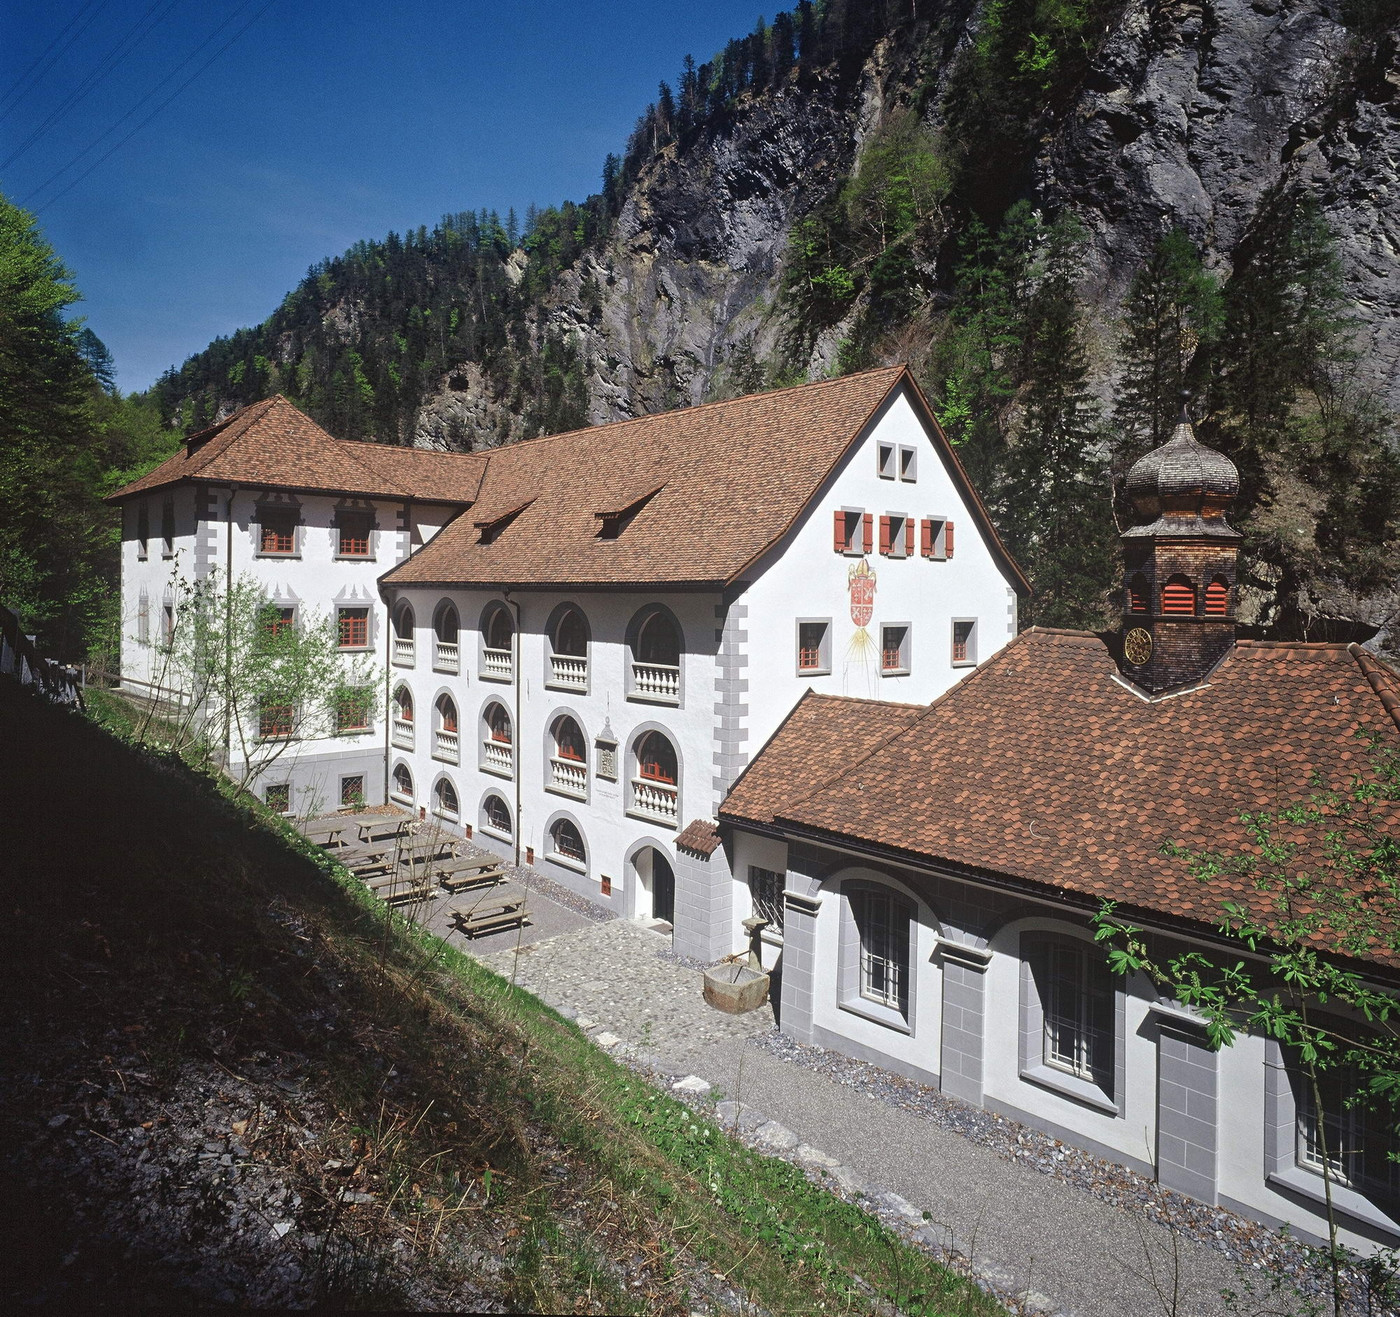 Für die Genesung: Zu seinen Glanzzeiten beherbergte das Alte Bad Pfäfers bis zu 300 Gäste.